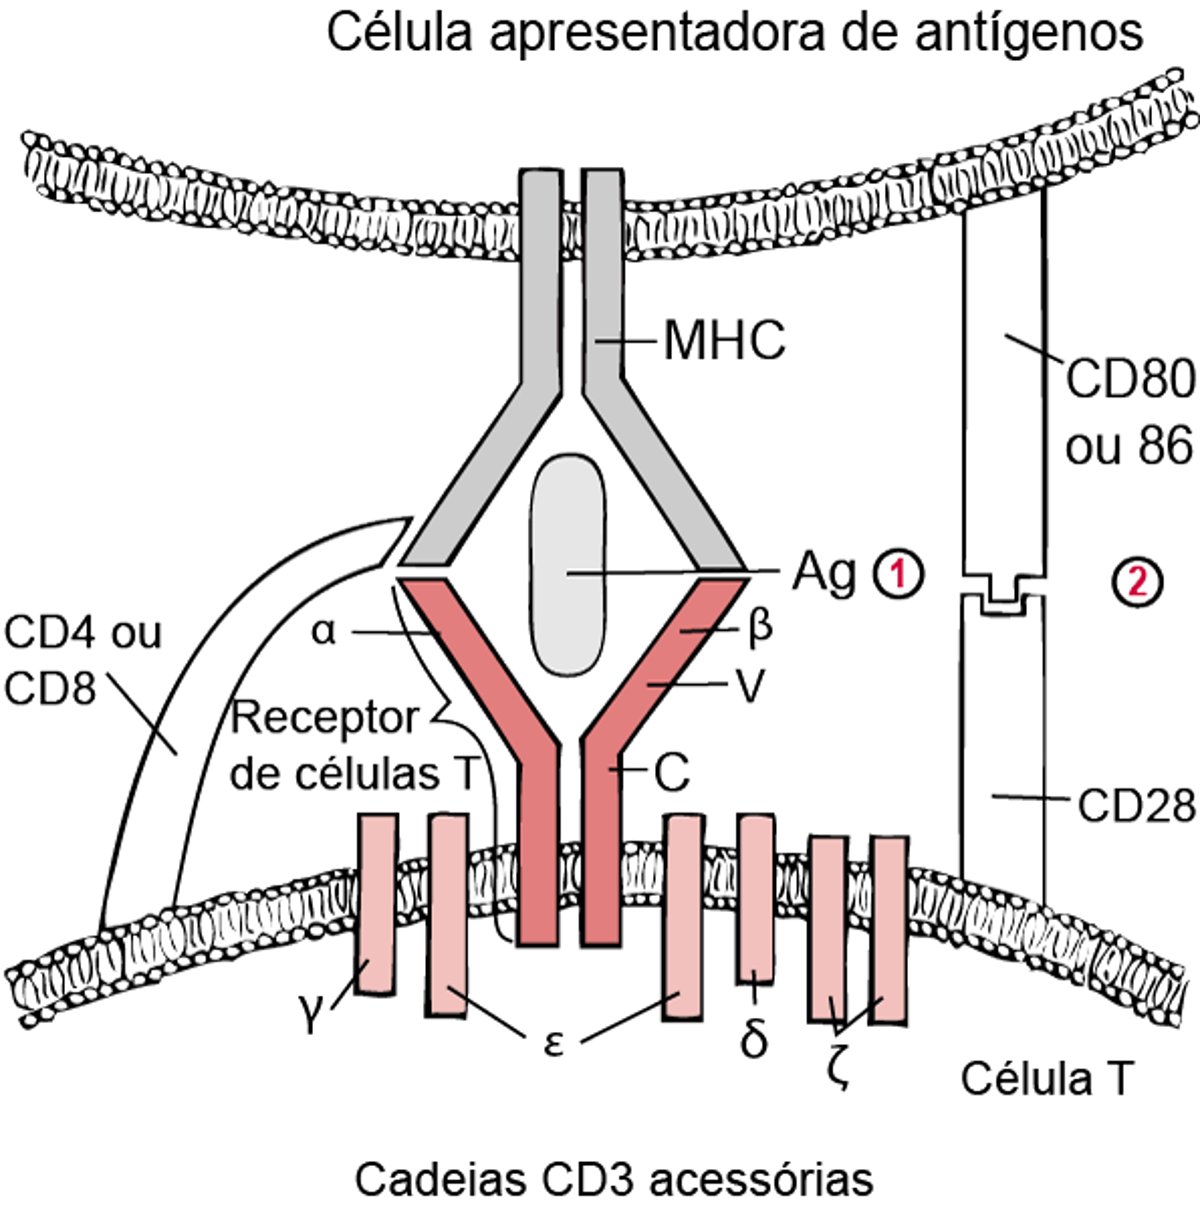 Modelo de dois sinais para ativação de células T